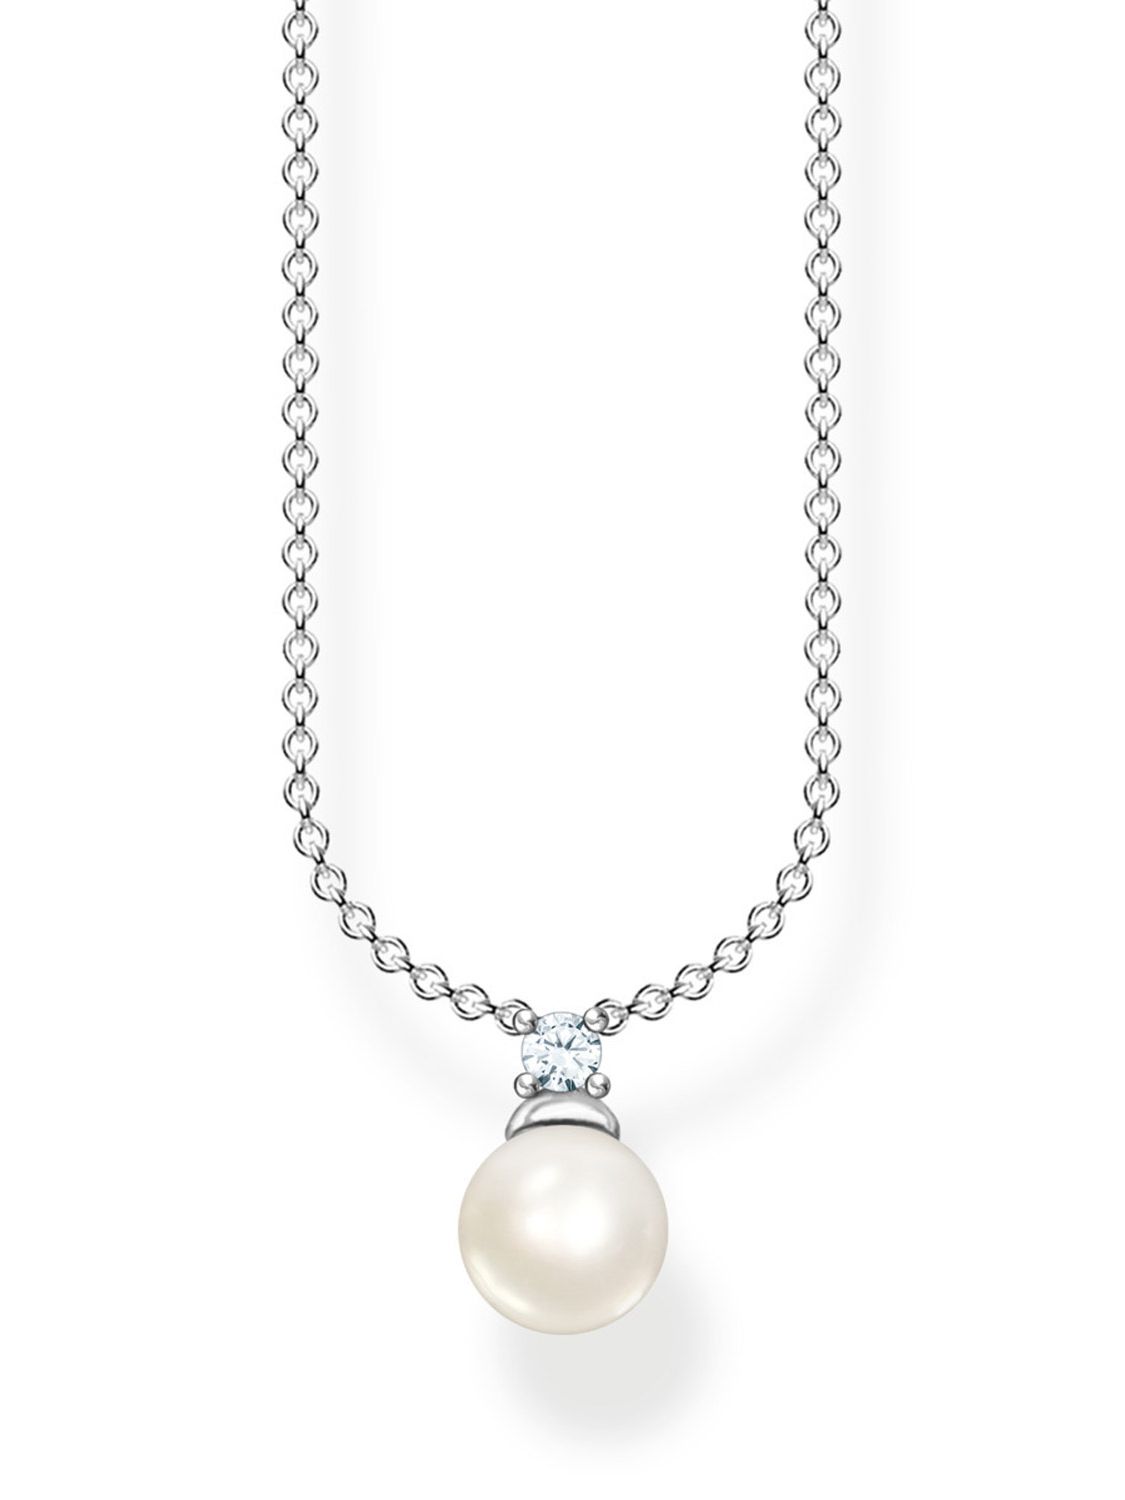 Thomas Sabo Damen-Halskette Perle Silber • uhrcenter KE2121-167-14-L45v